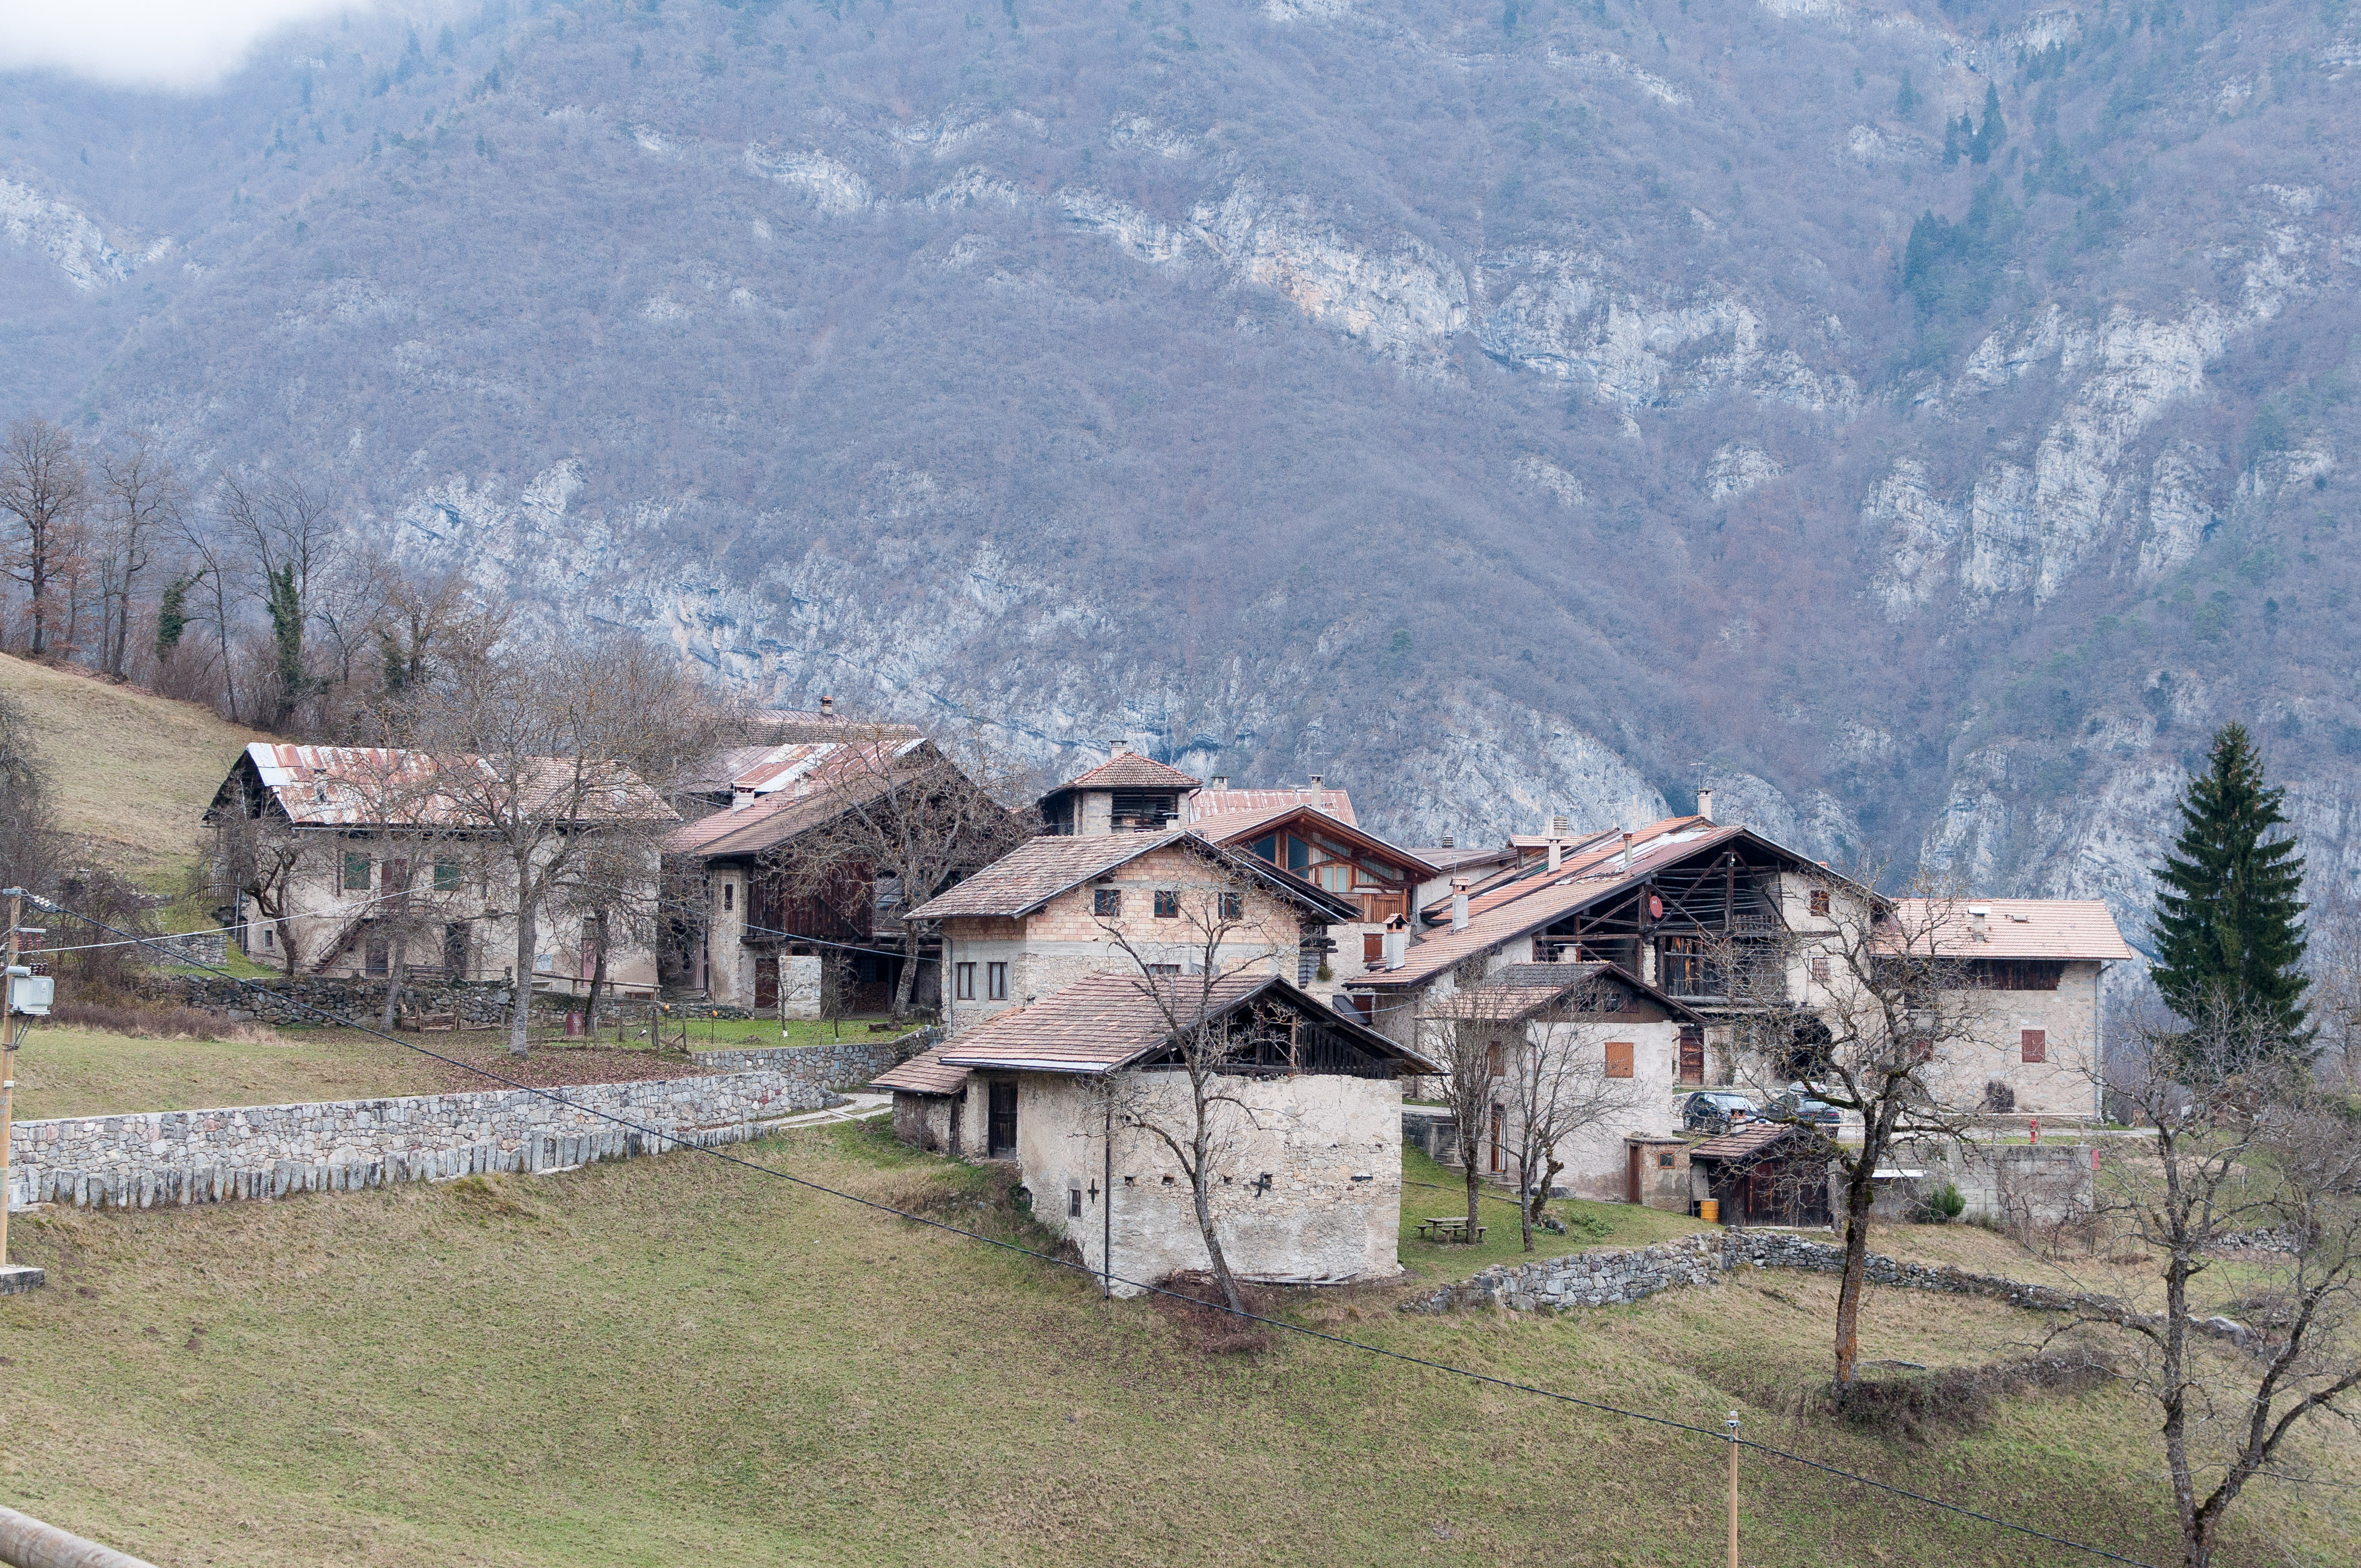 Villaggio abbandonato, visto da lontano, con tipiche case medievali trentine